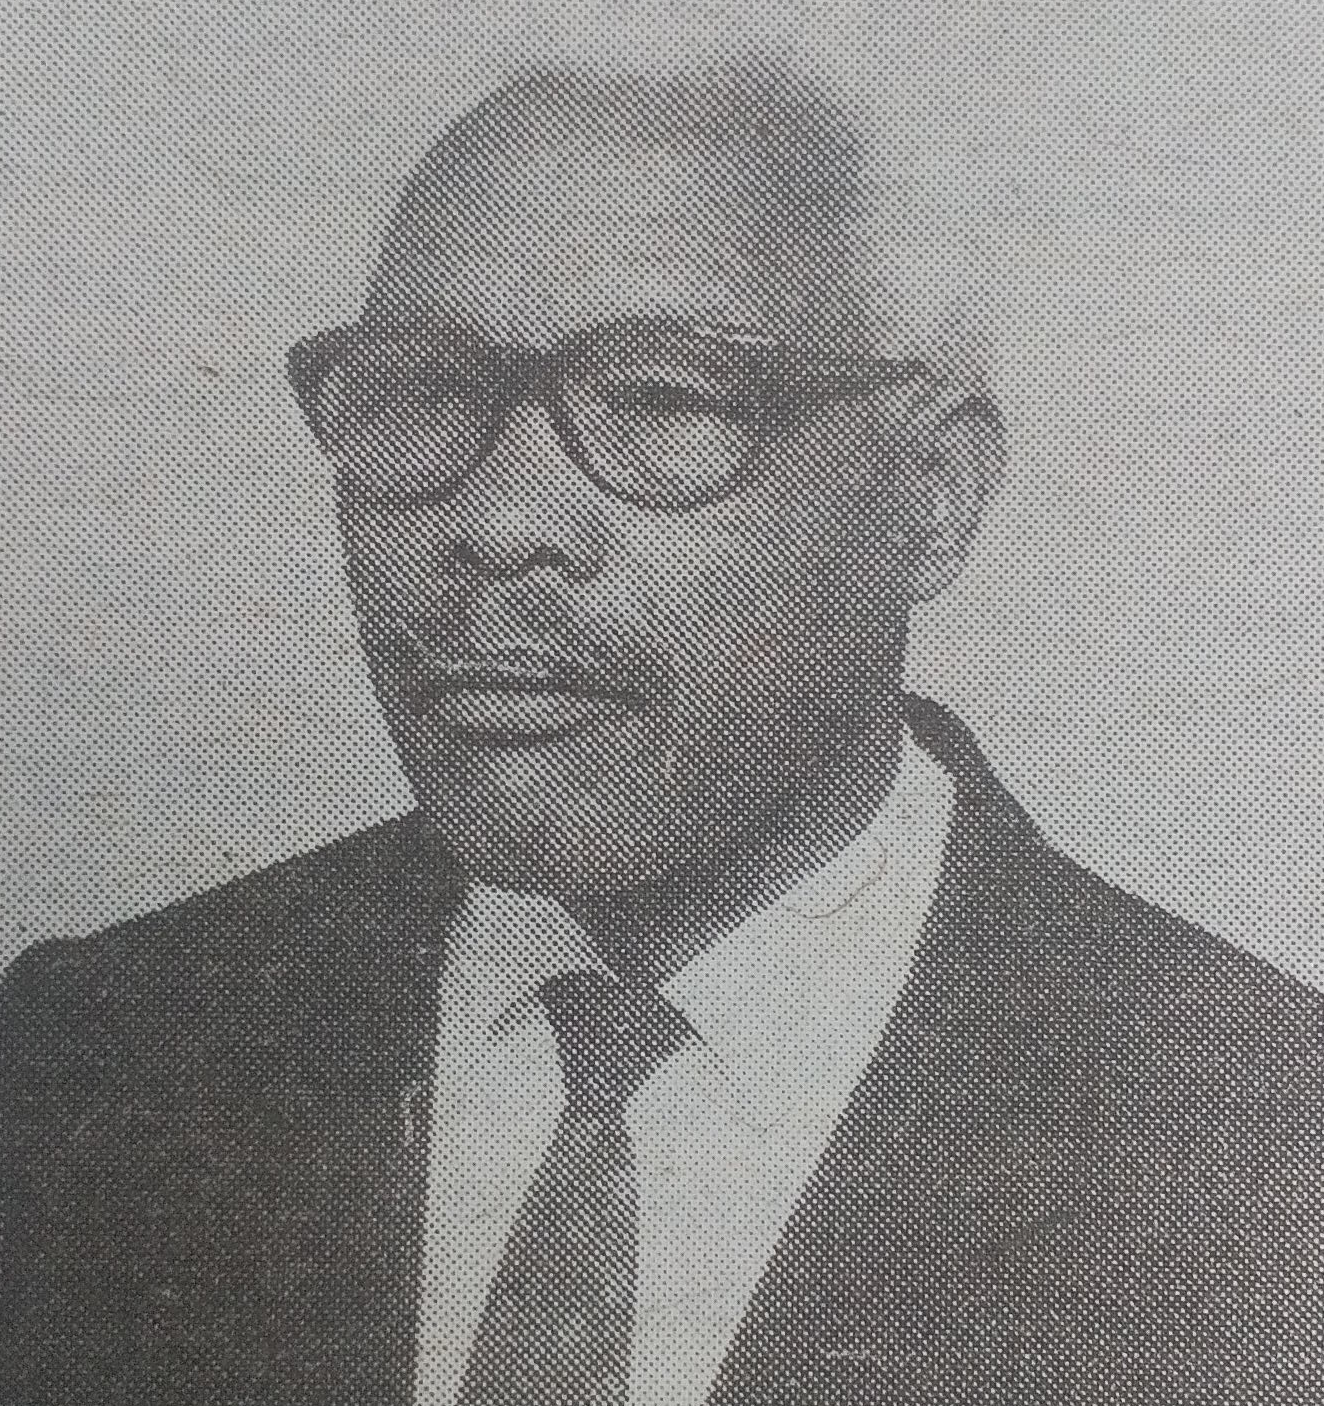 Obituary Image of Samuel Mwaniki Wachira